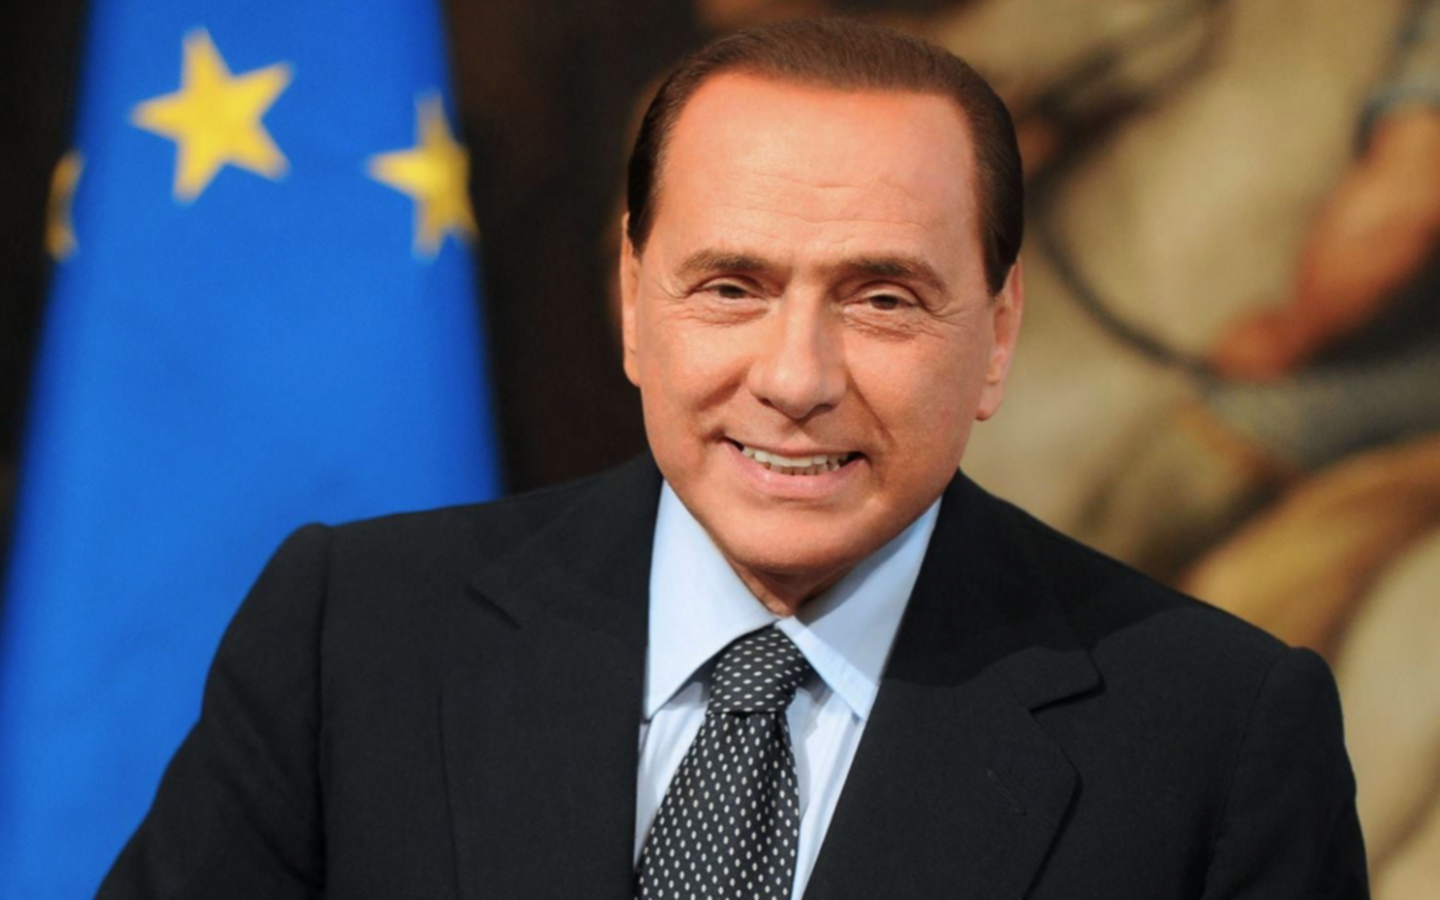 Internado y estable: la salud de Berlusconi tras el positivo de coronavirus